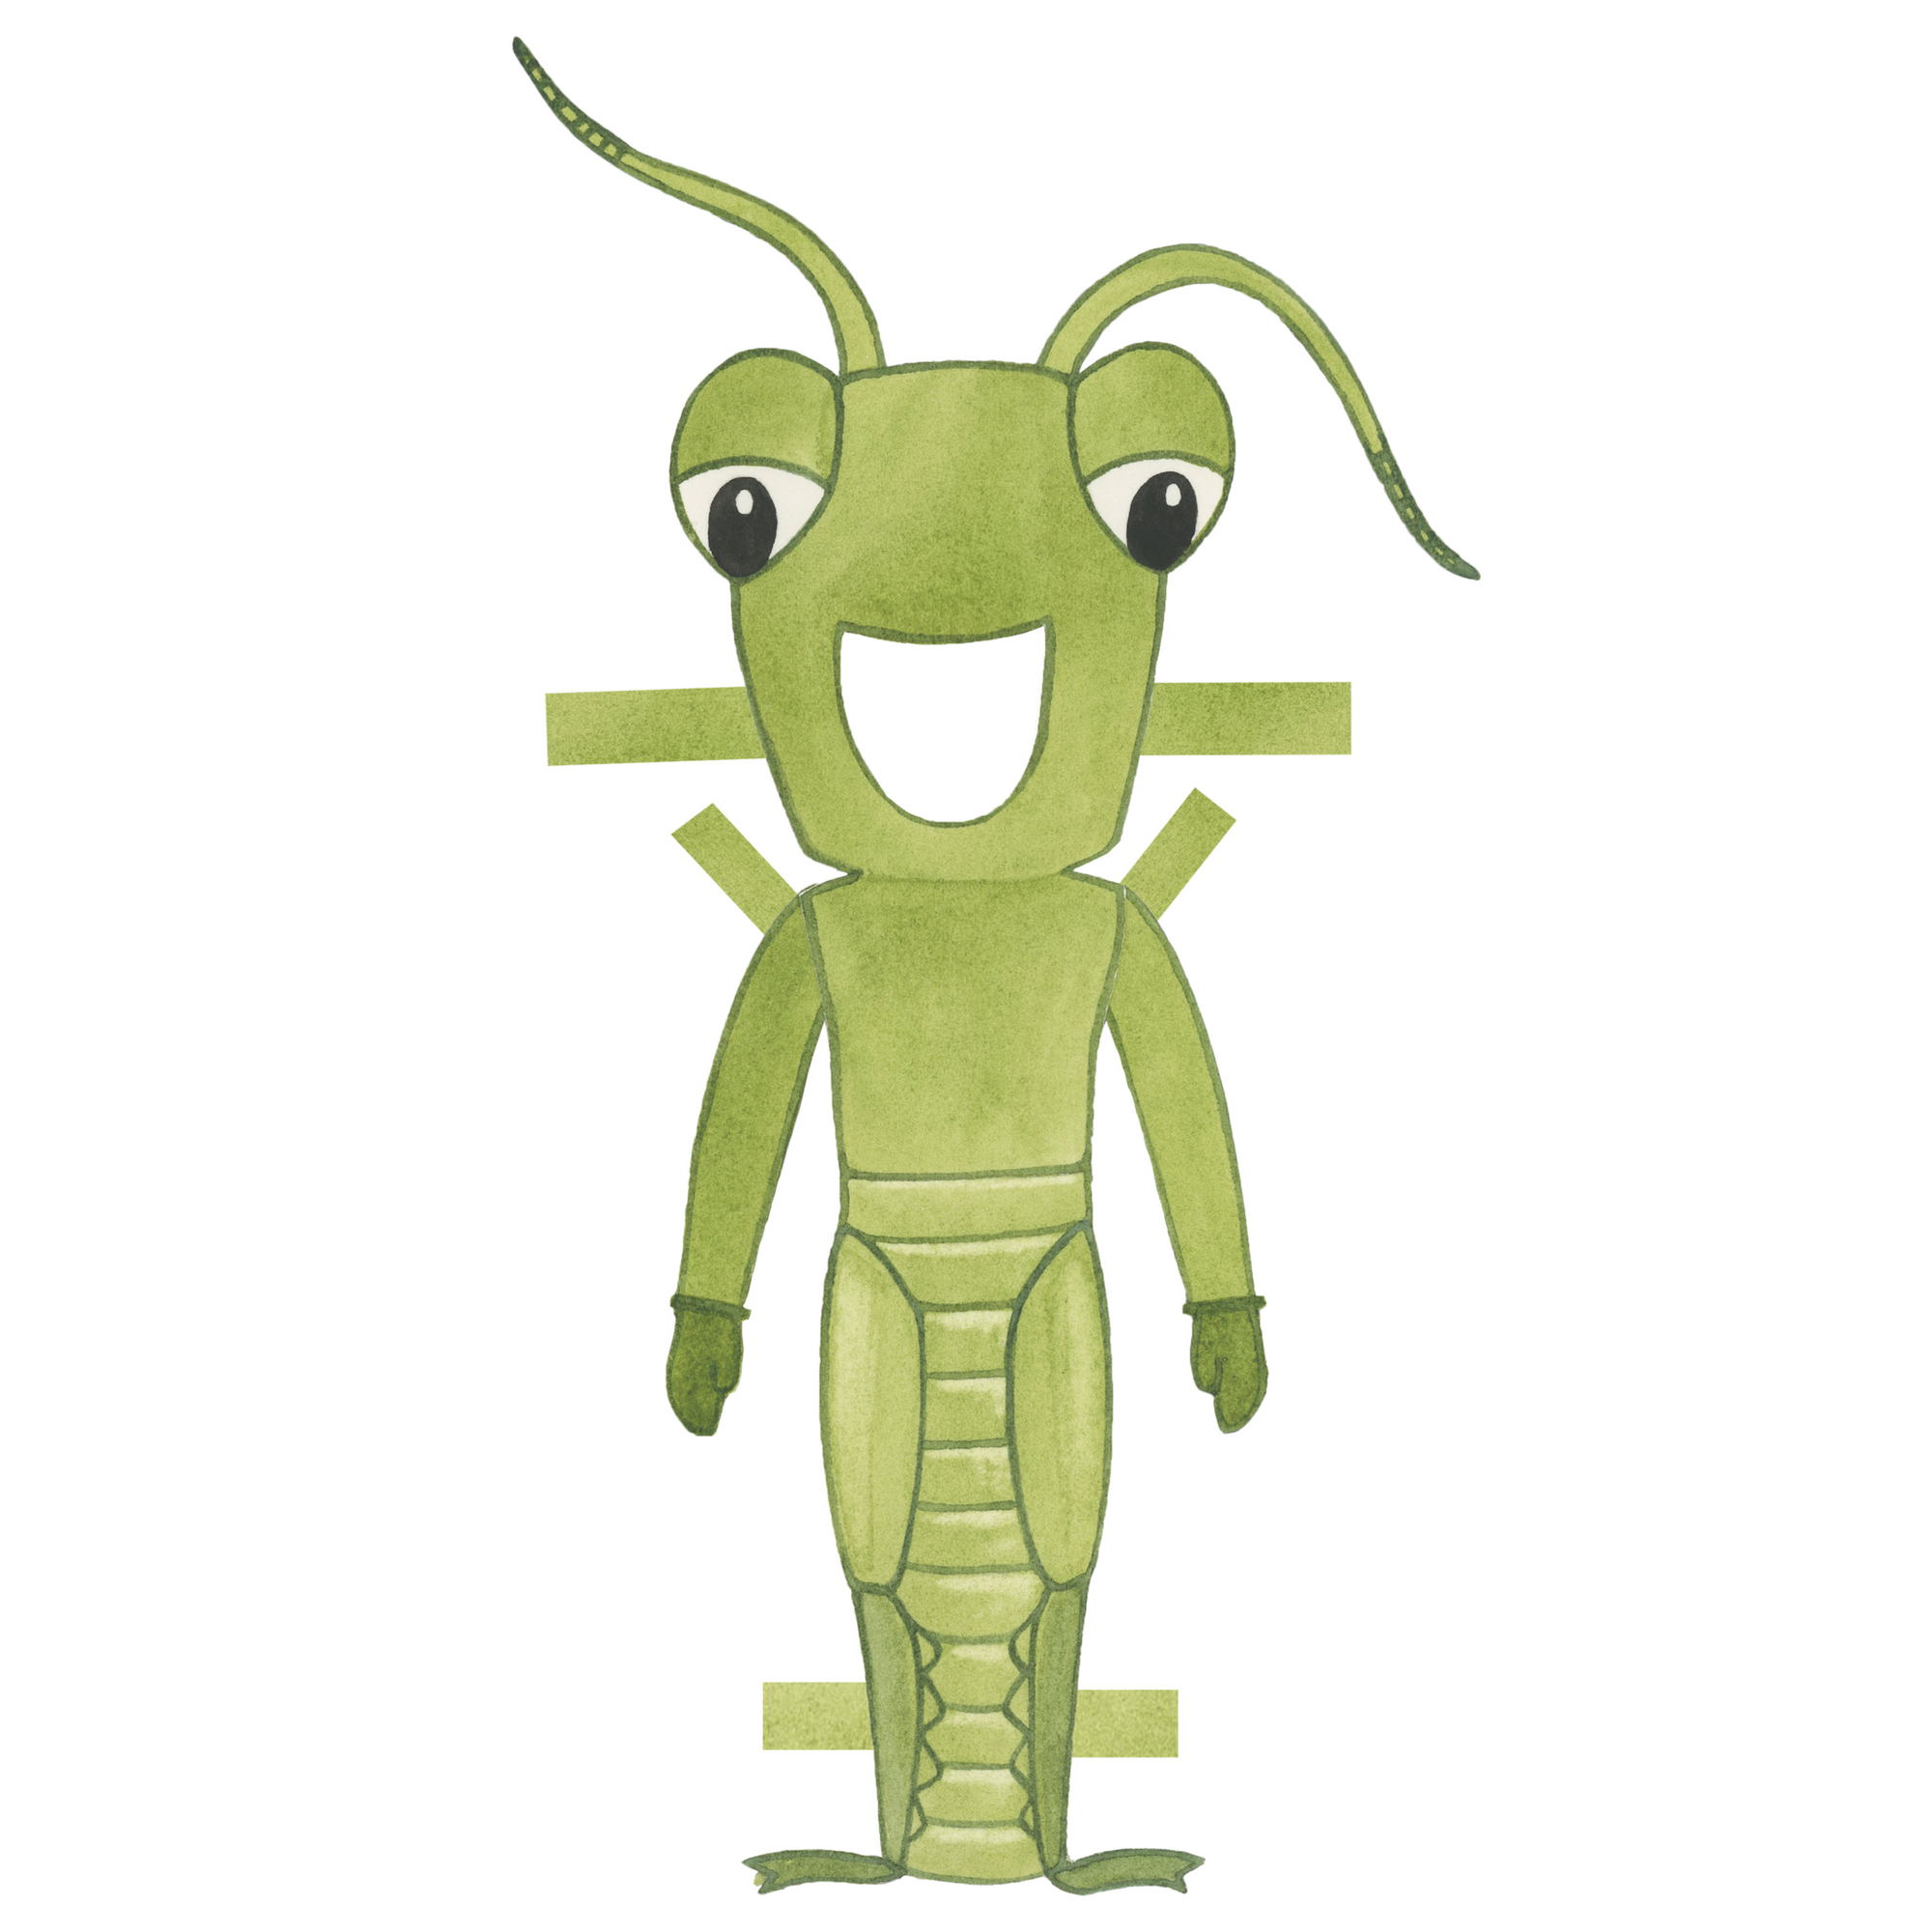 The ant the grasshopper grasshopper costume